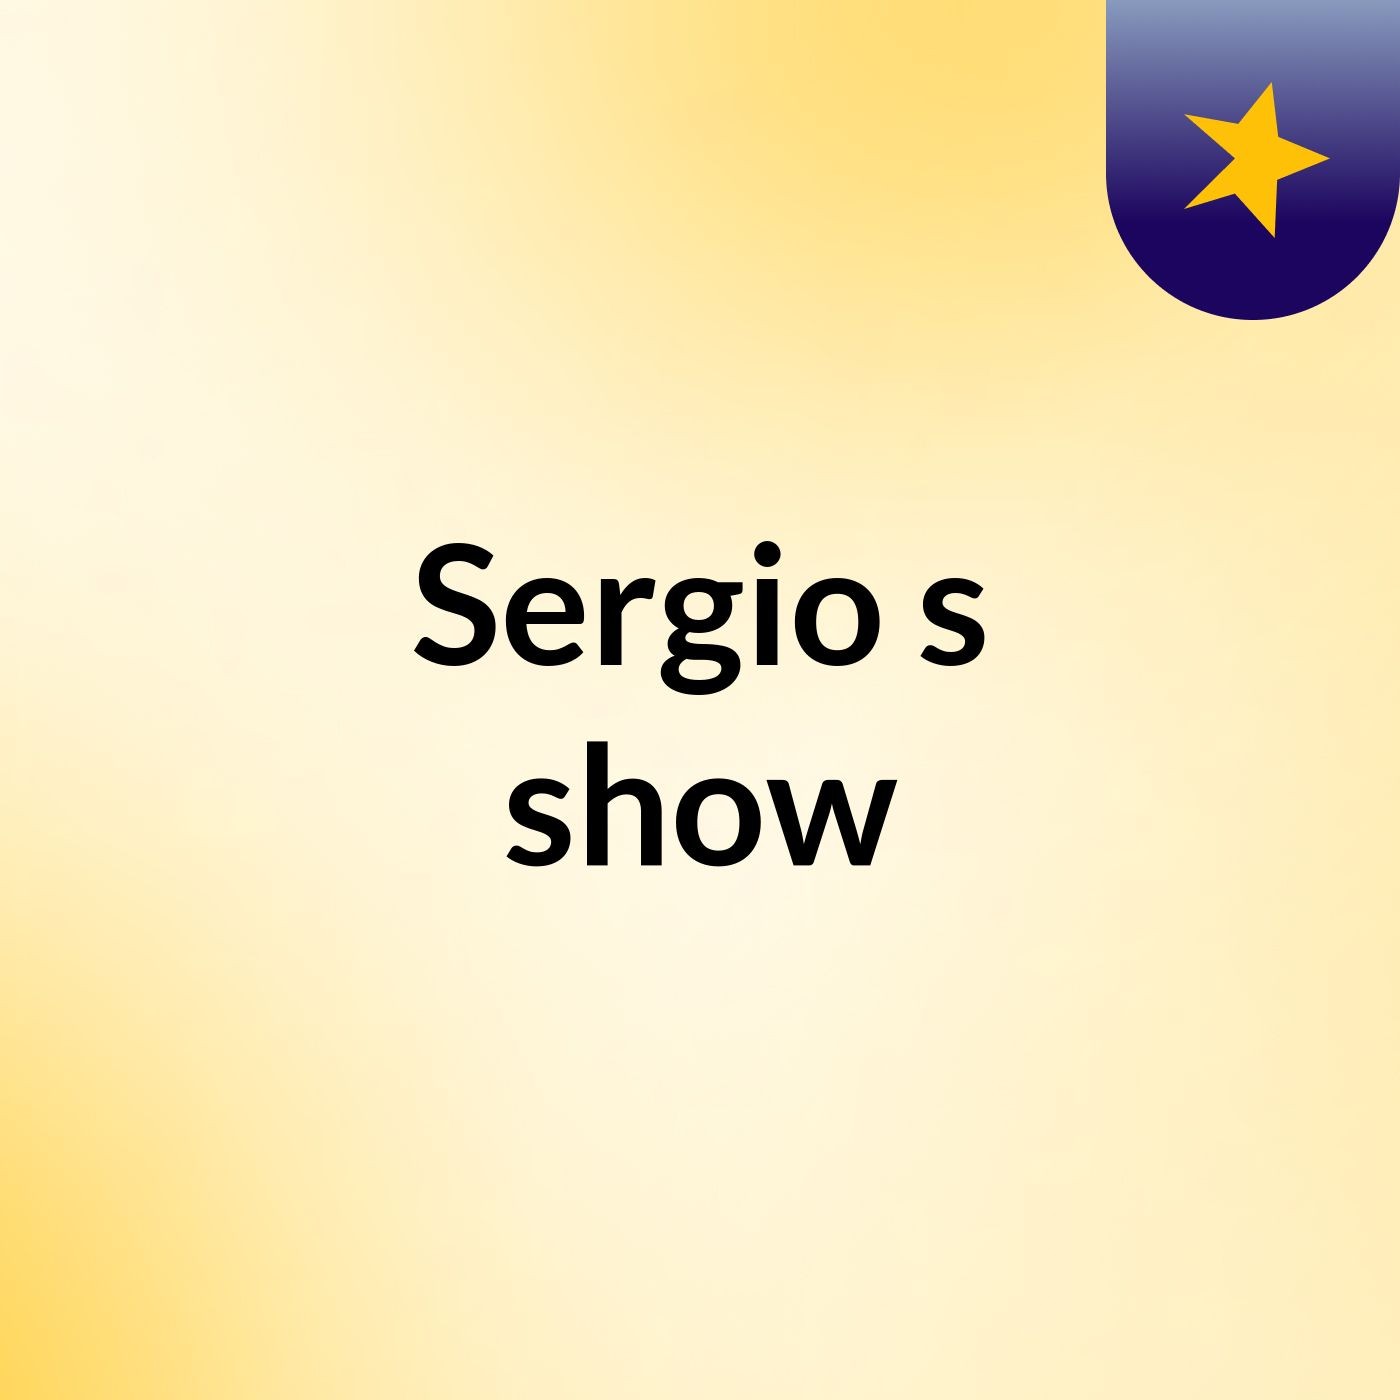 Sergio's show